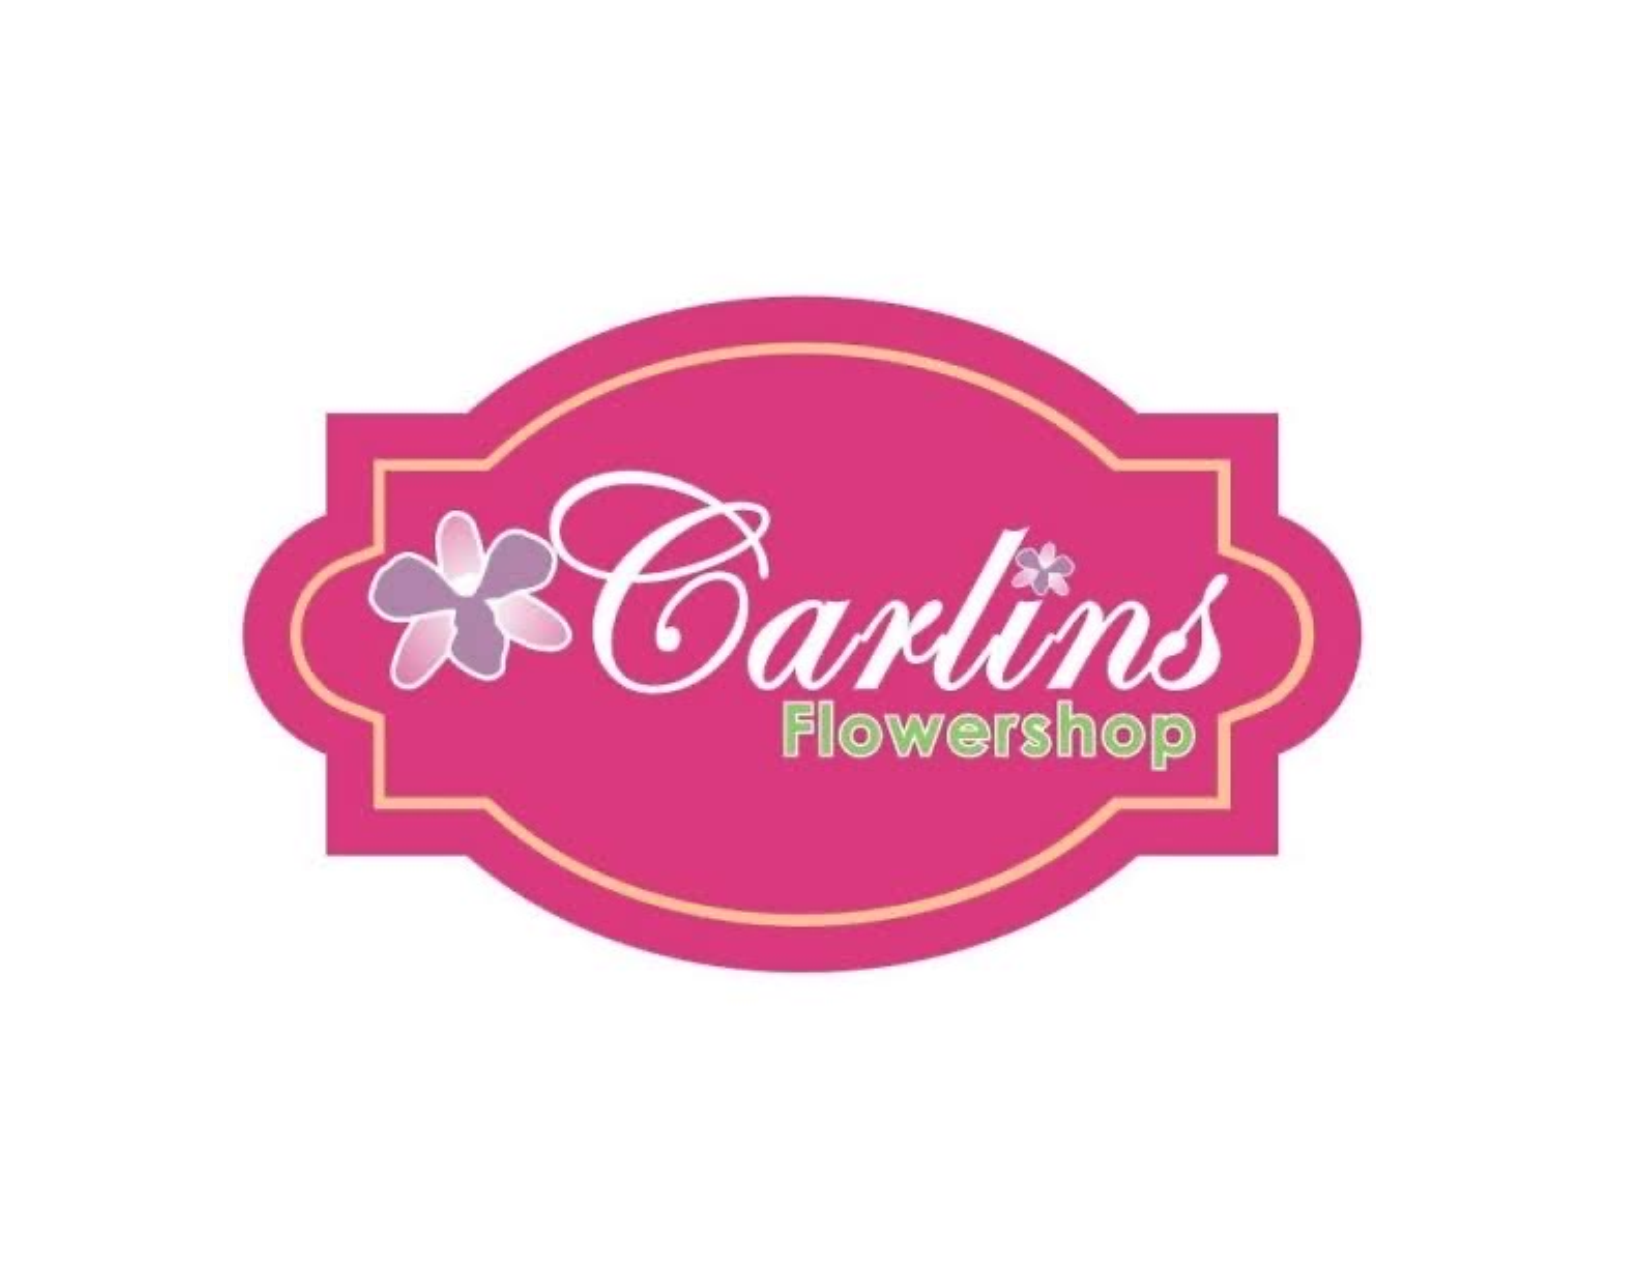 CARLINS FLOWERSHOP